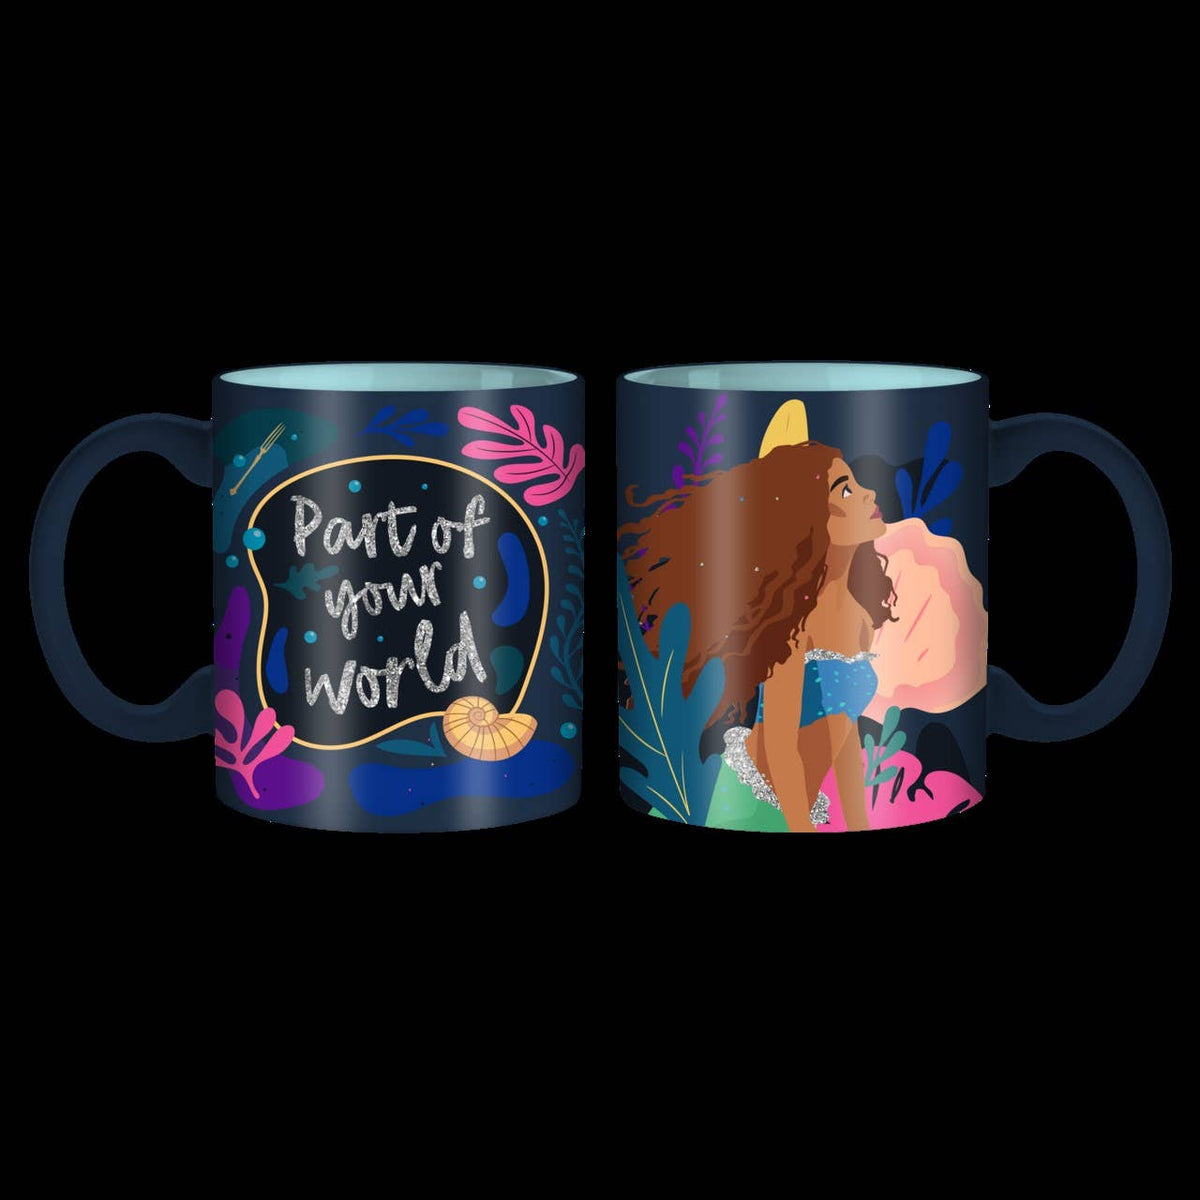 The Littler Mermaid 20oz Ceramic Mug with Glitter